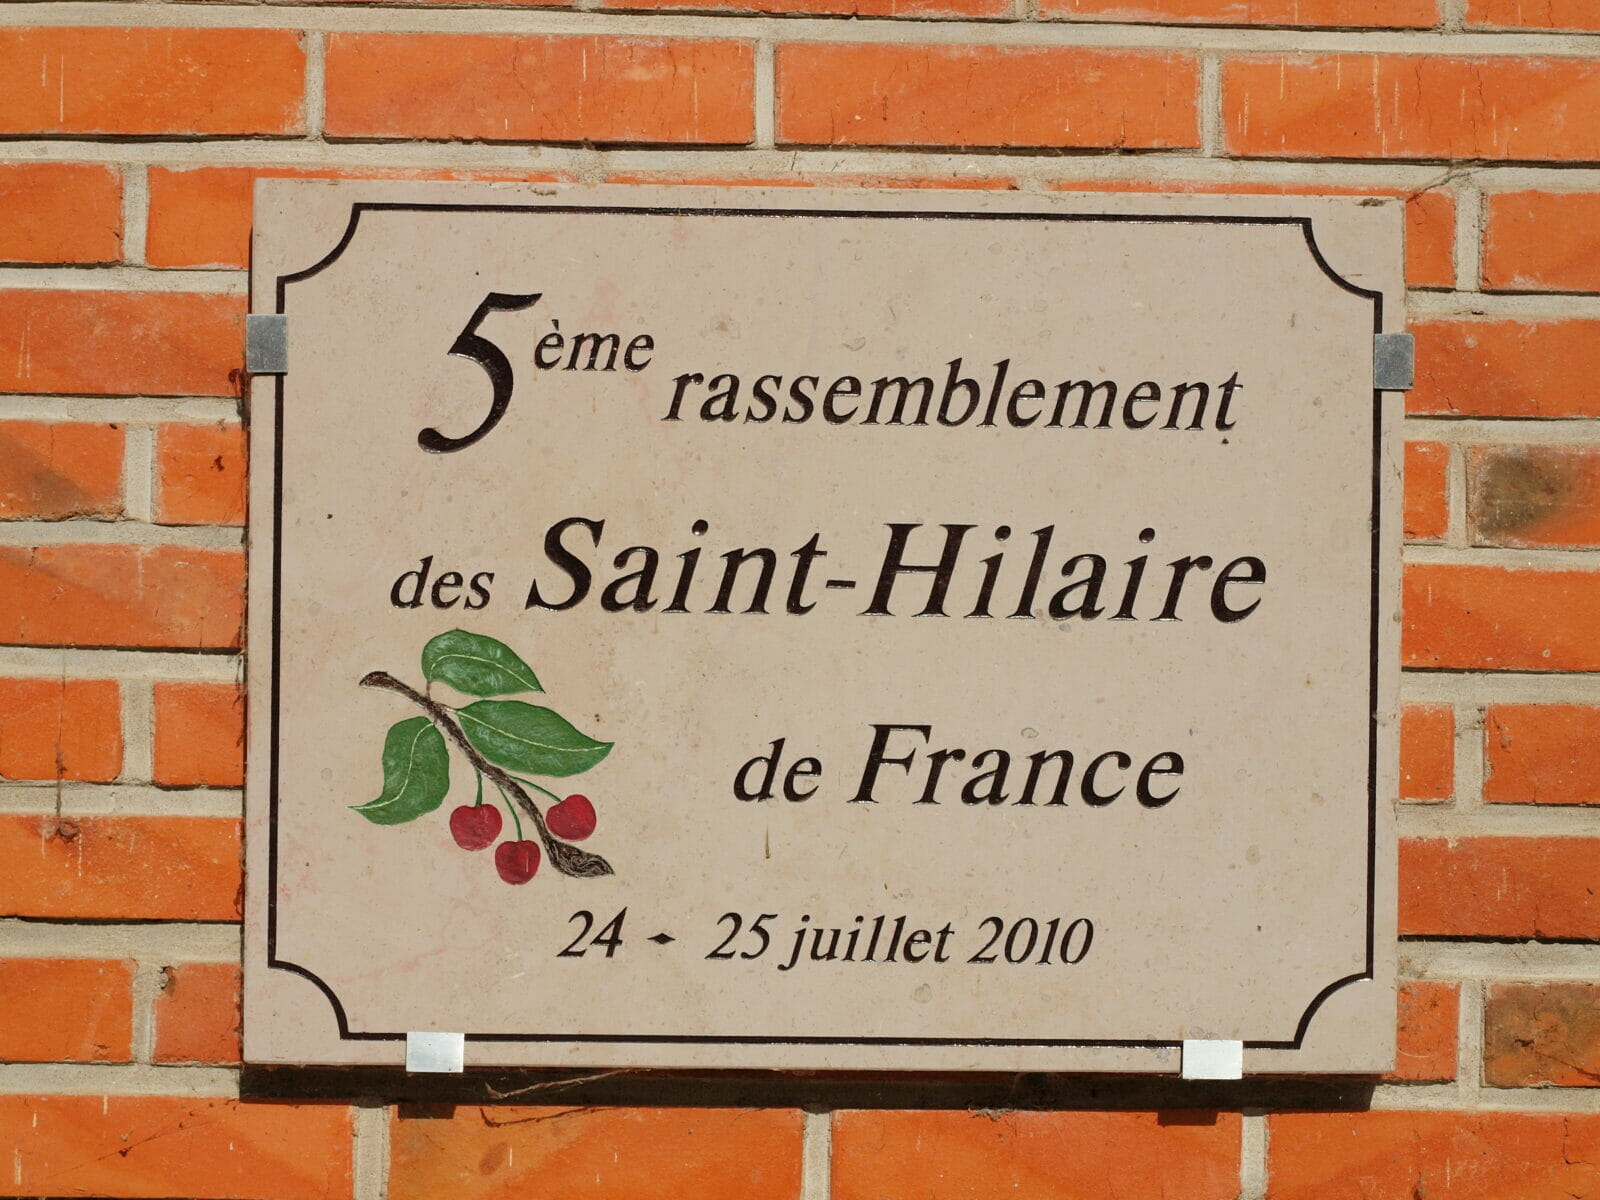 Saint-Hilaire